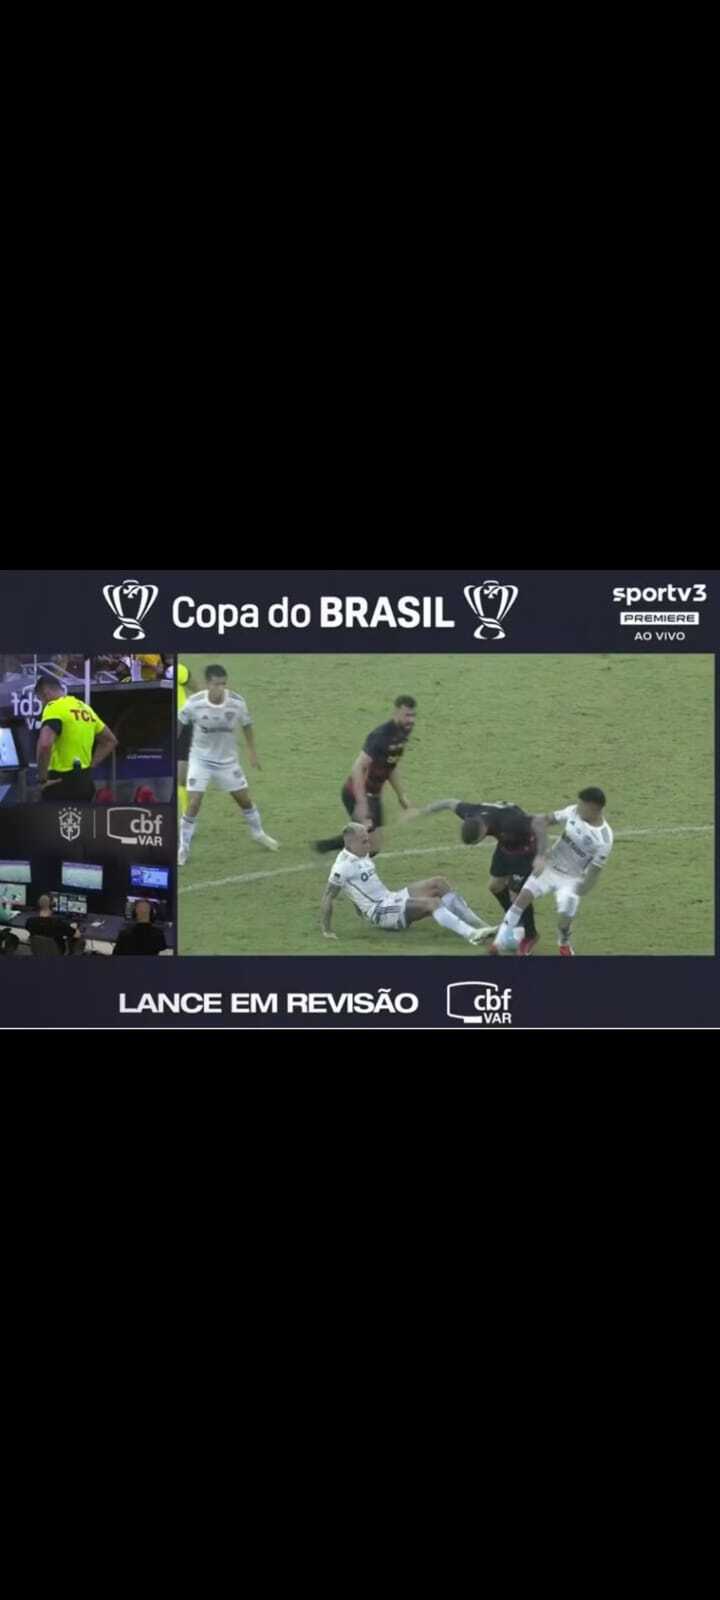 Árbitro de Vídeo para a imagem no momento em que Zaracho teria cometido falta no jogador do Sport